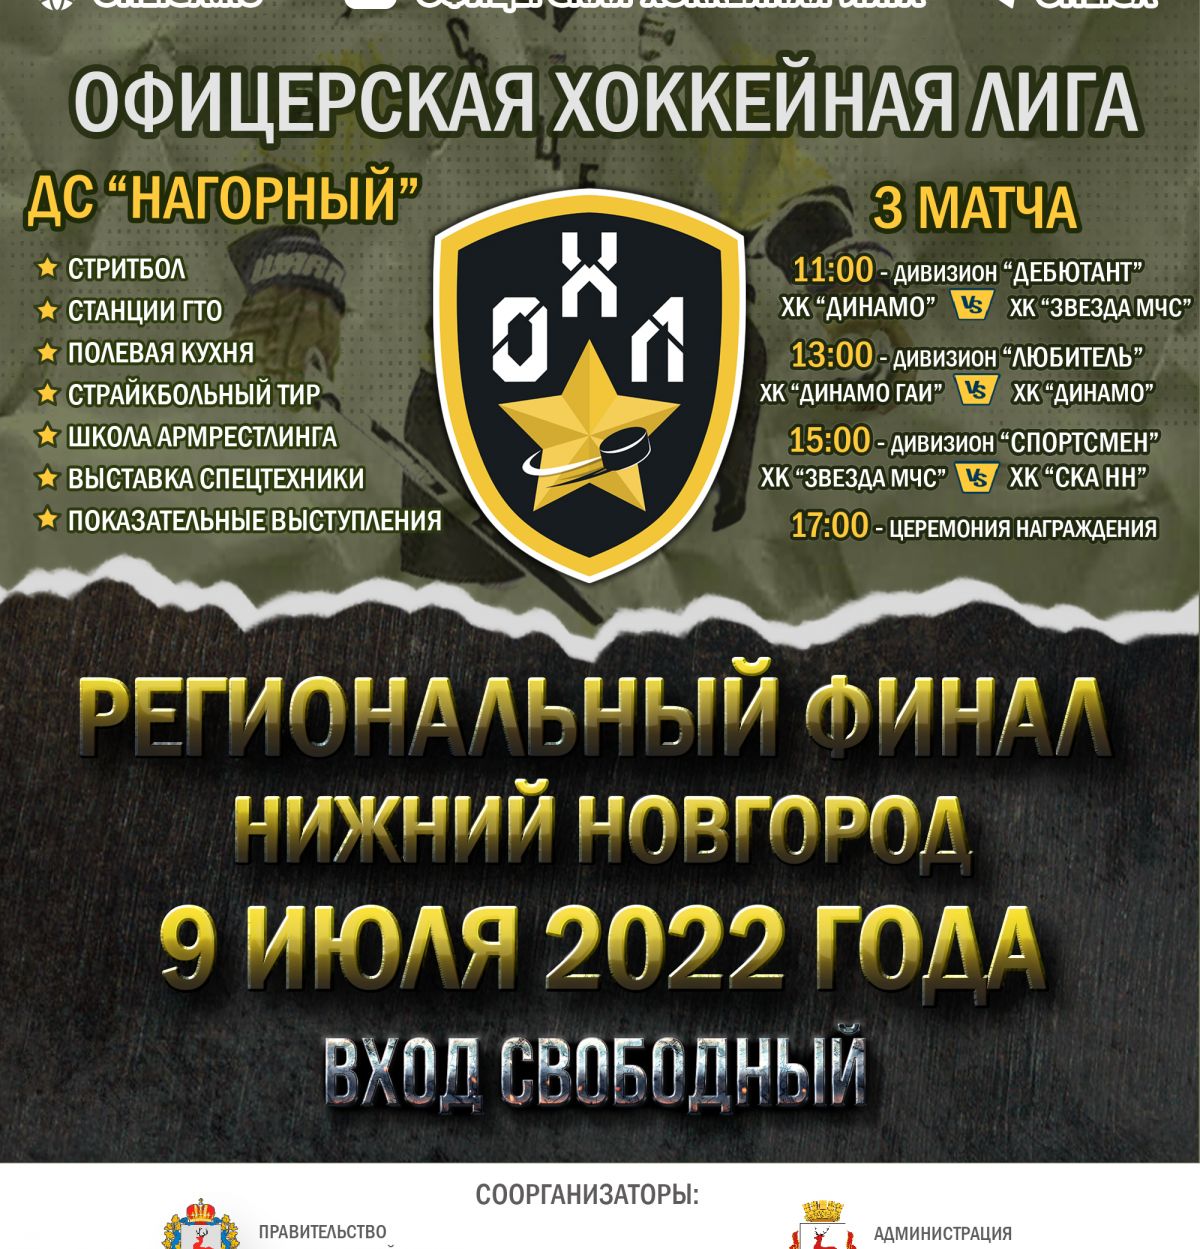 Финалы Офицерской хоккейной лиги в Нижнем Новгороде